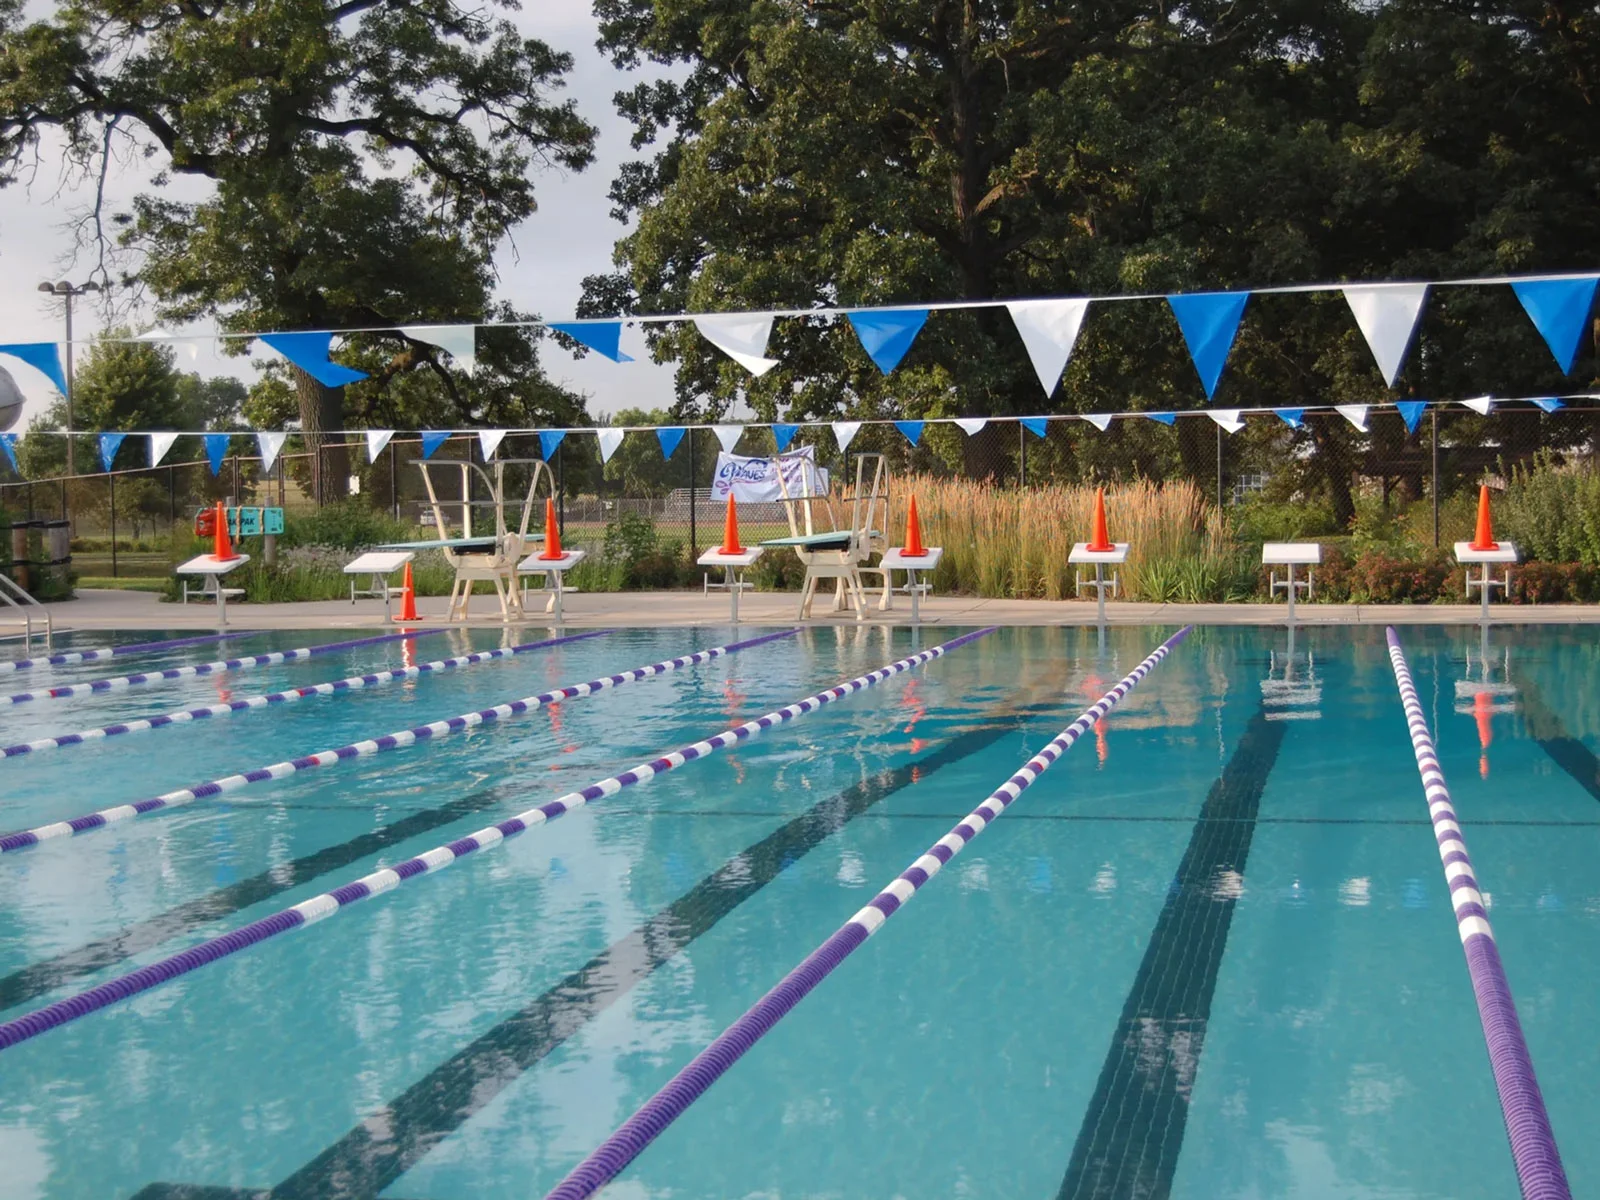 Goodman Pool swimming lanes